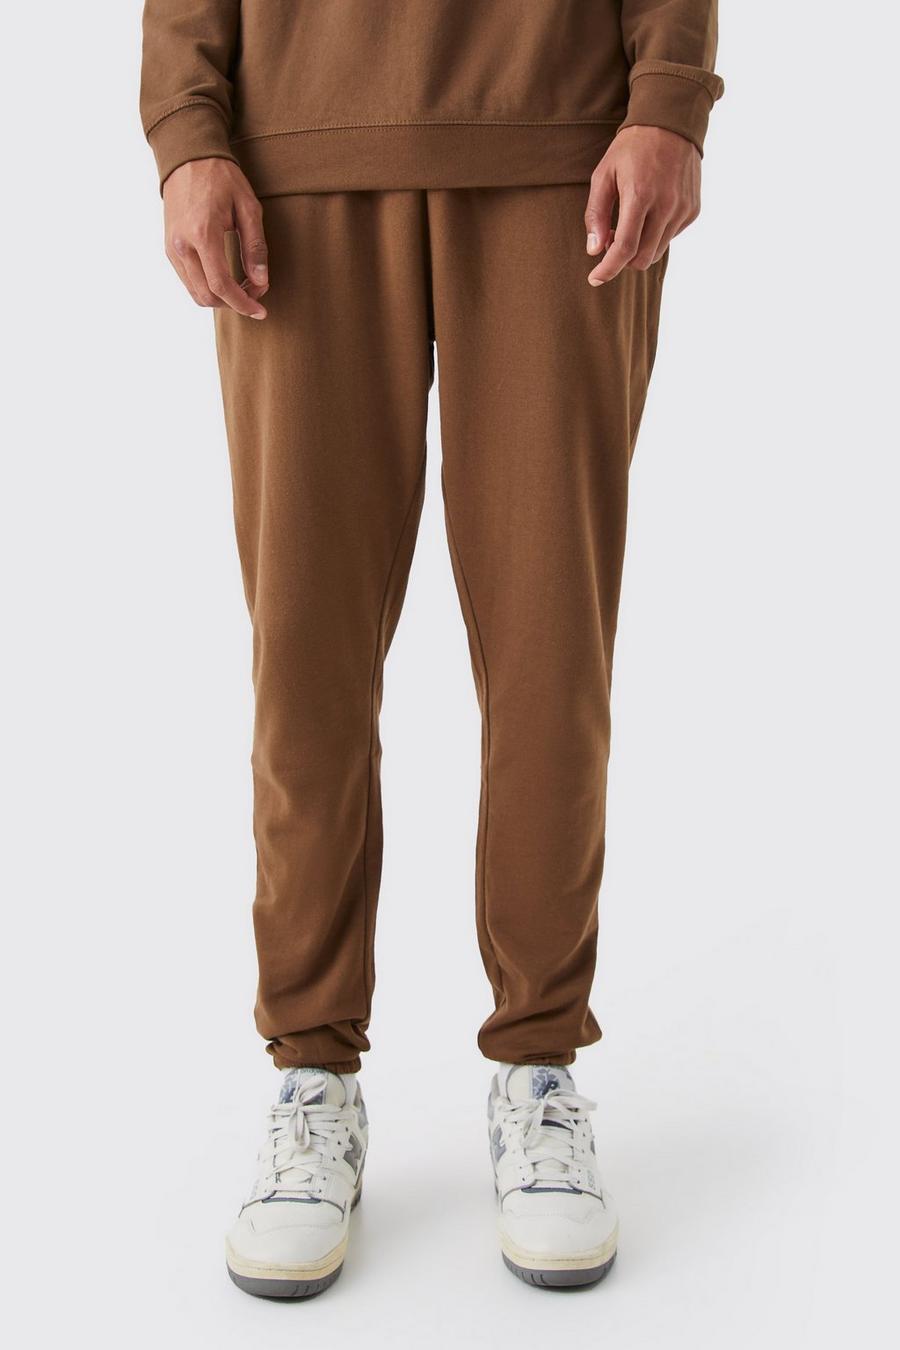 Pantaloni tuta Tall Basic Core Fit, Chocolate